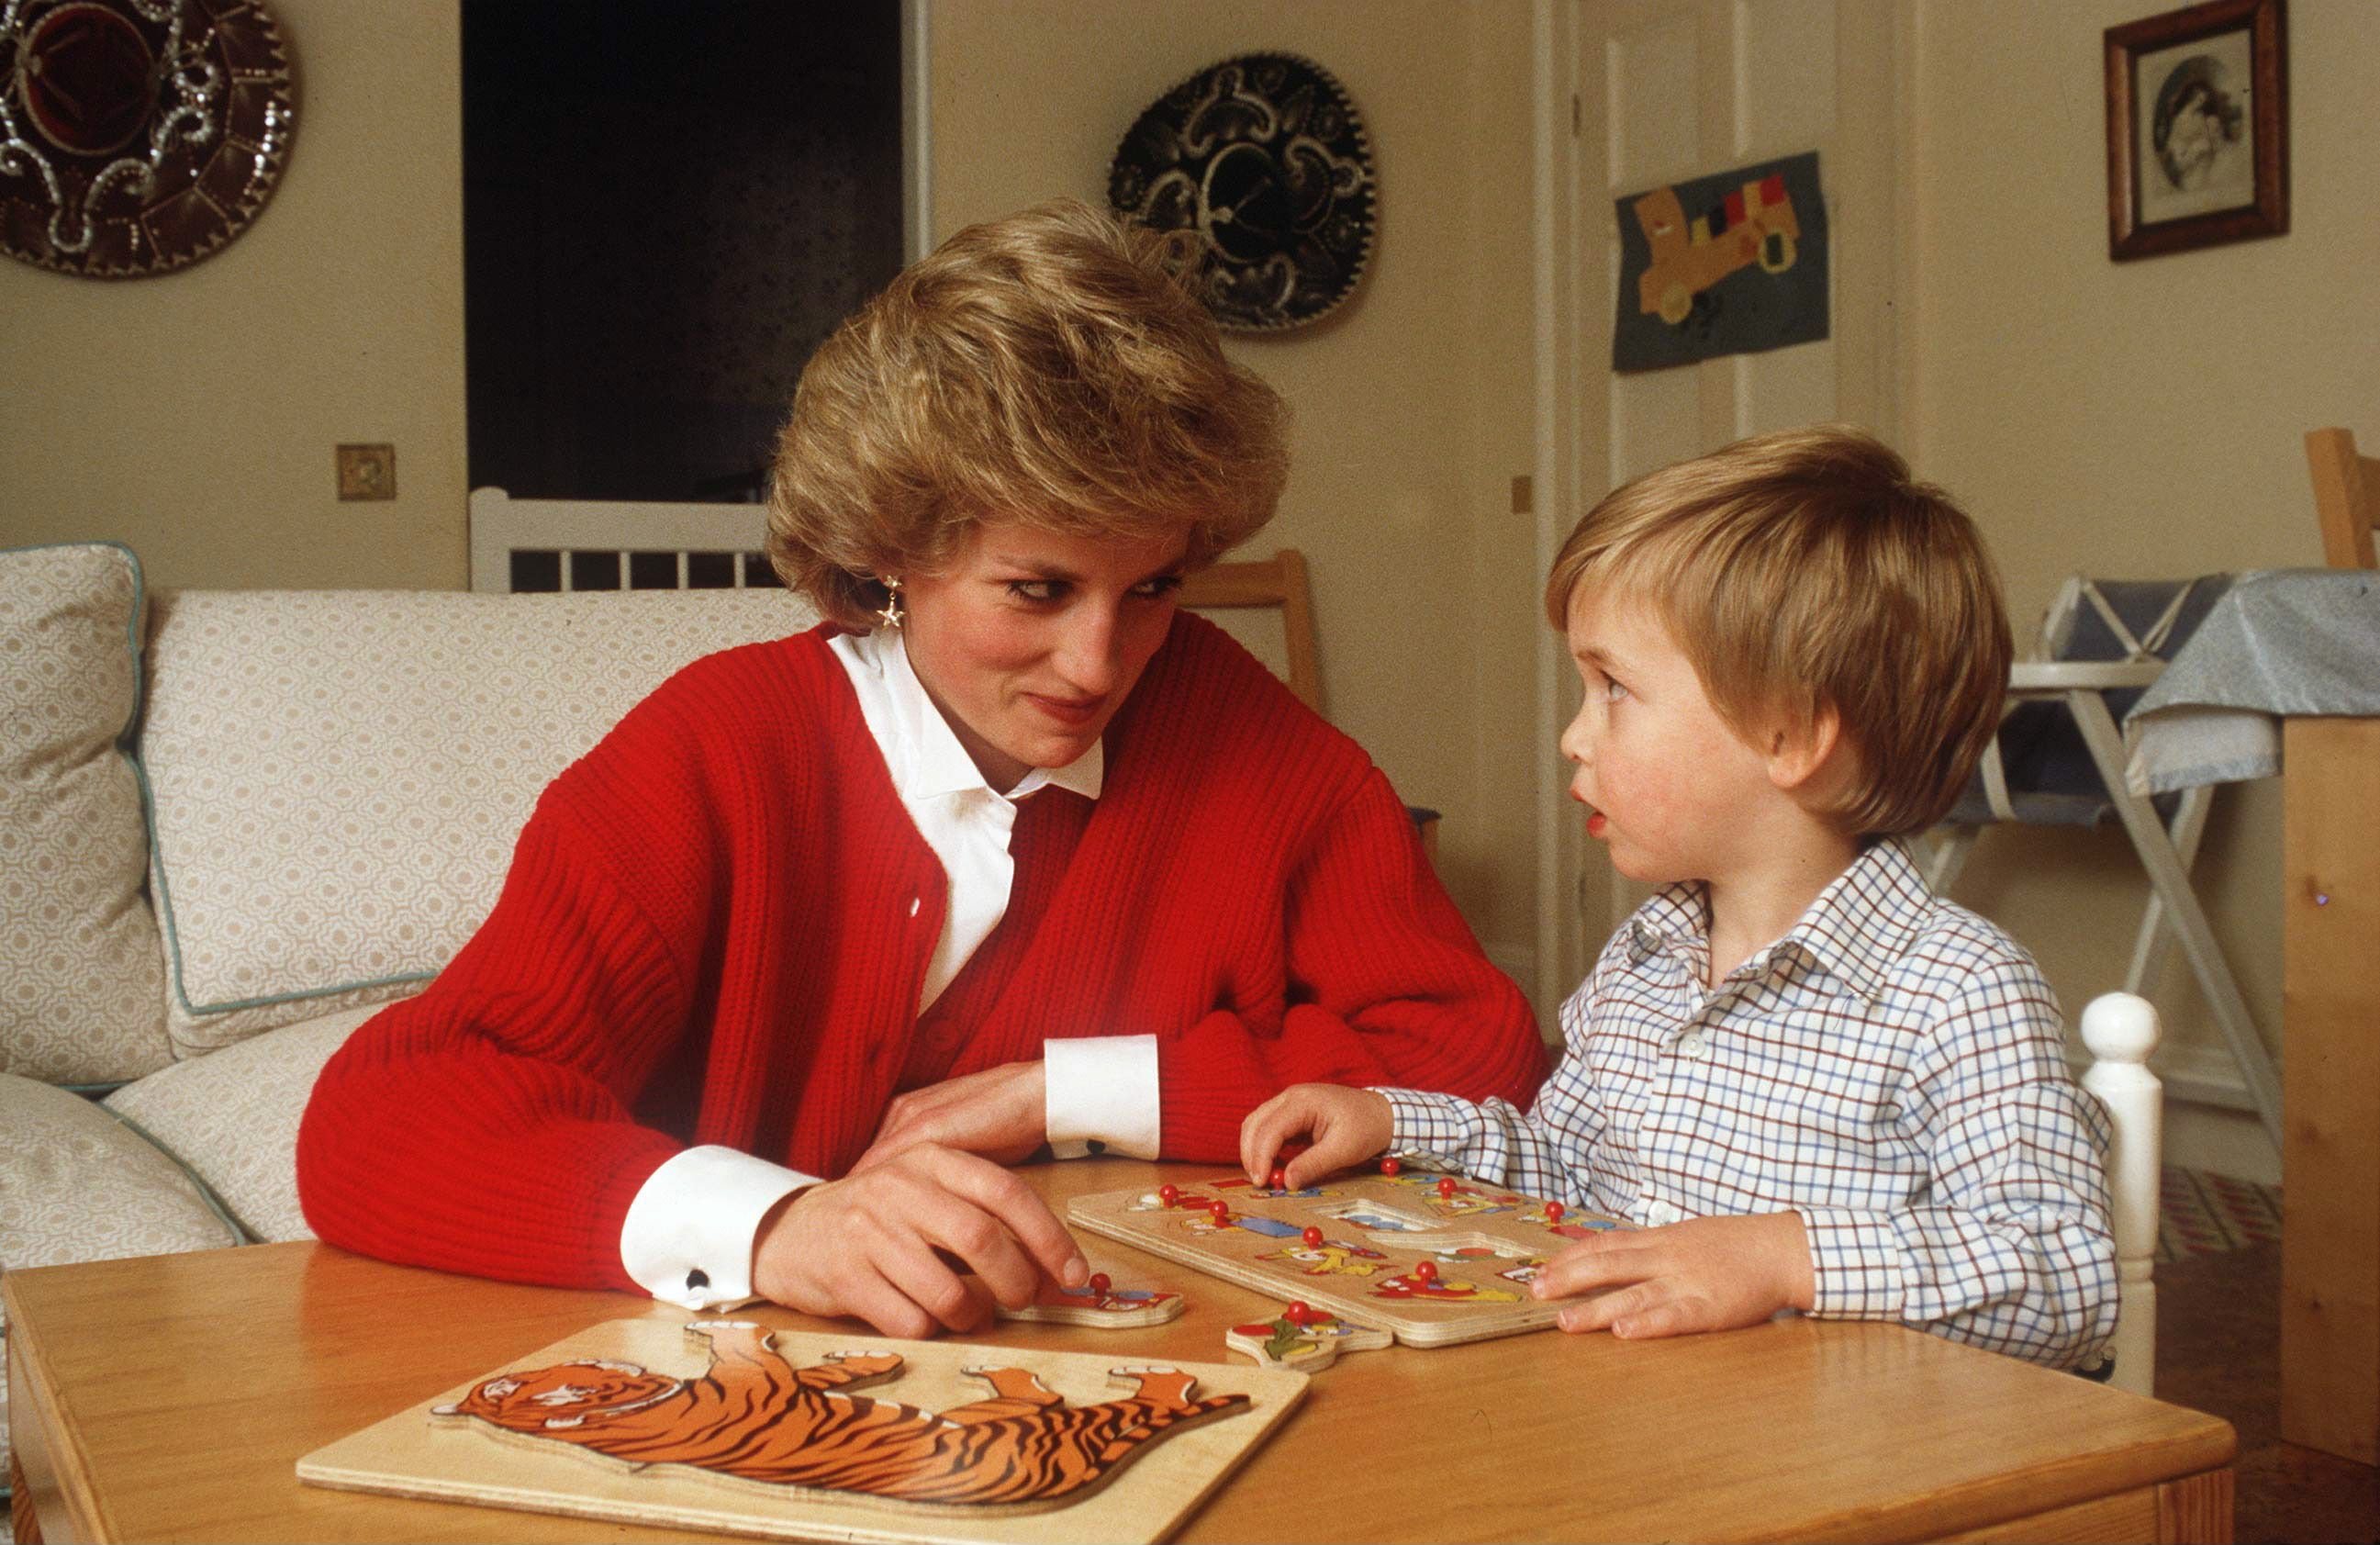 La princesa Diana ayudando al príncipe William con un juguete de rompecabezas en su sala de juegos en casa en el Palacio de Kensington. | Foto: Getty Images